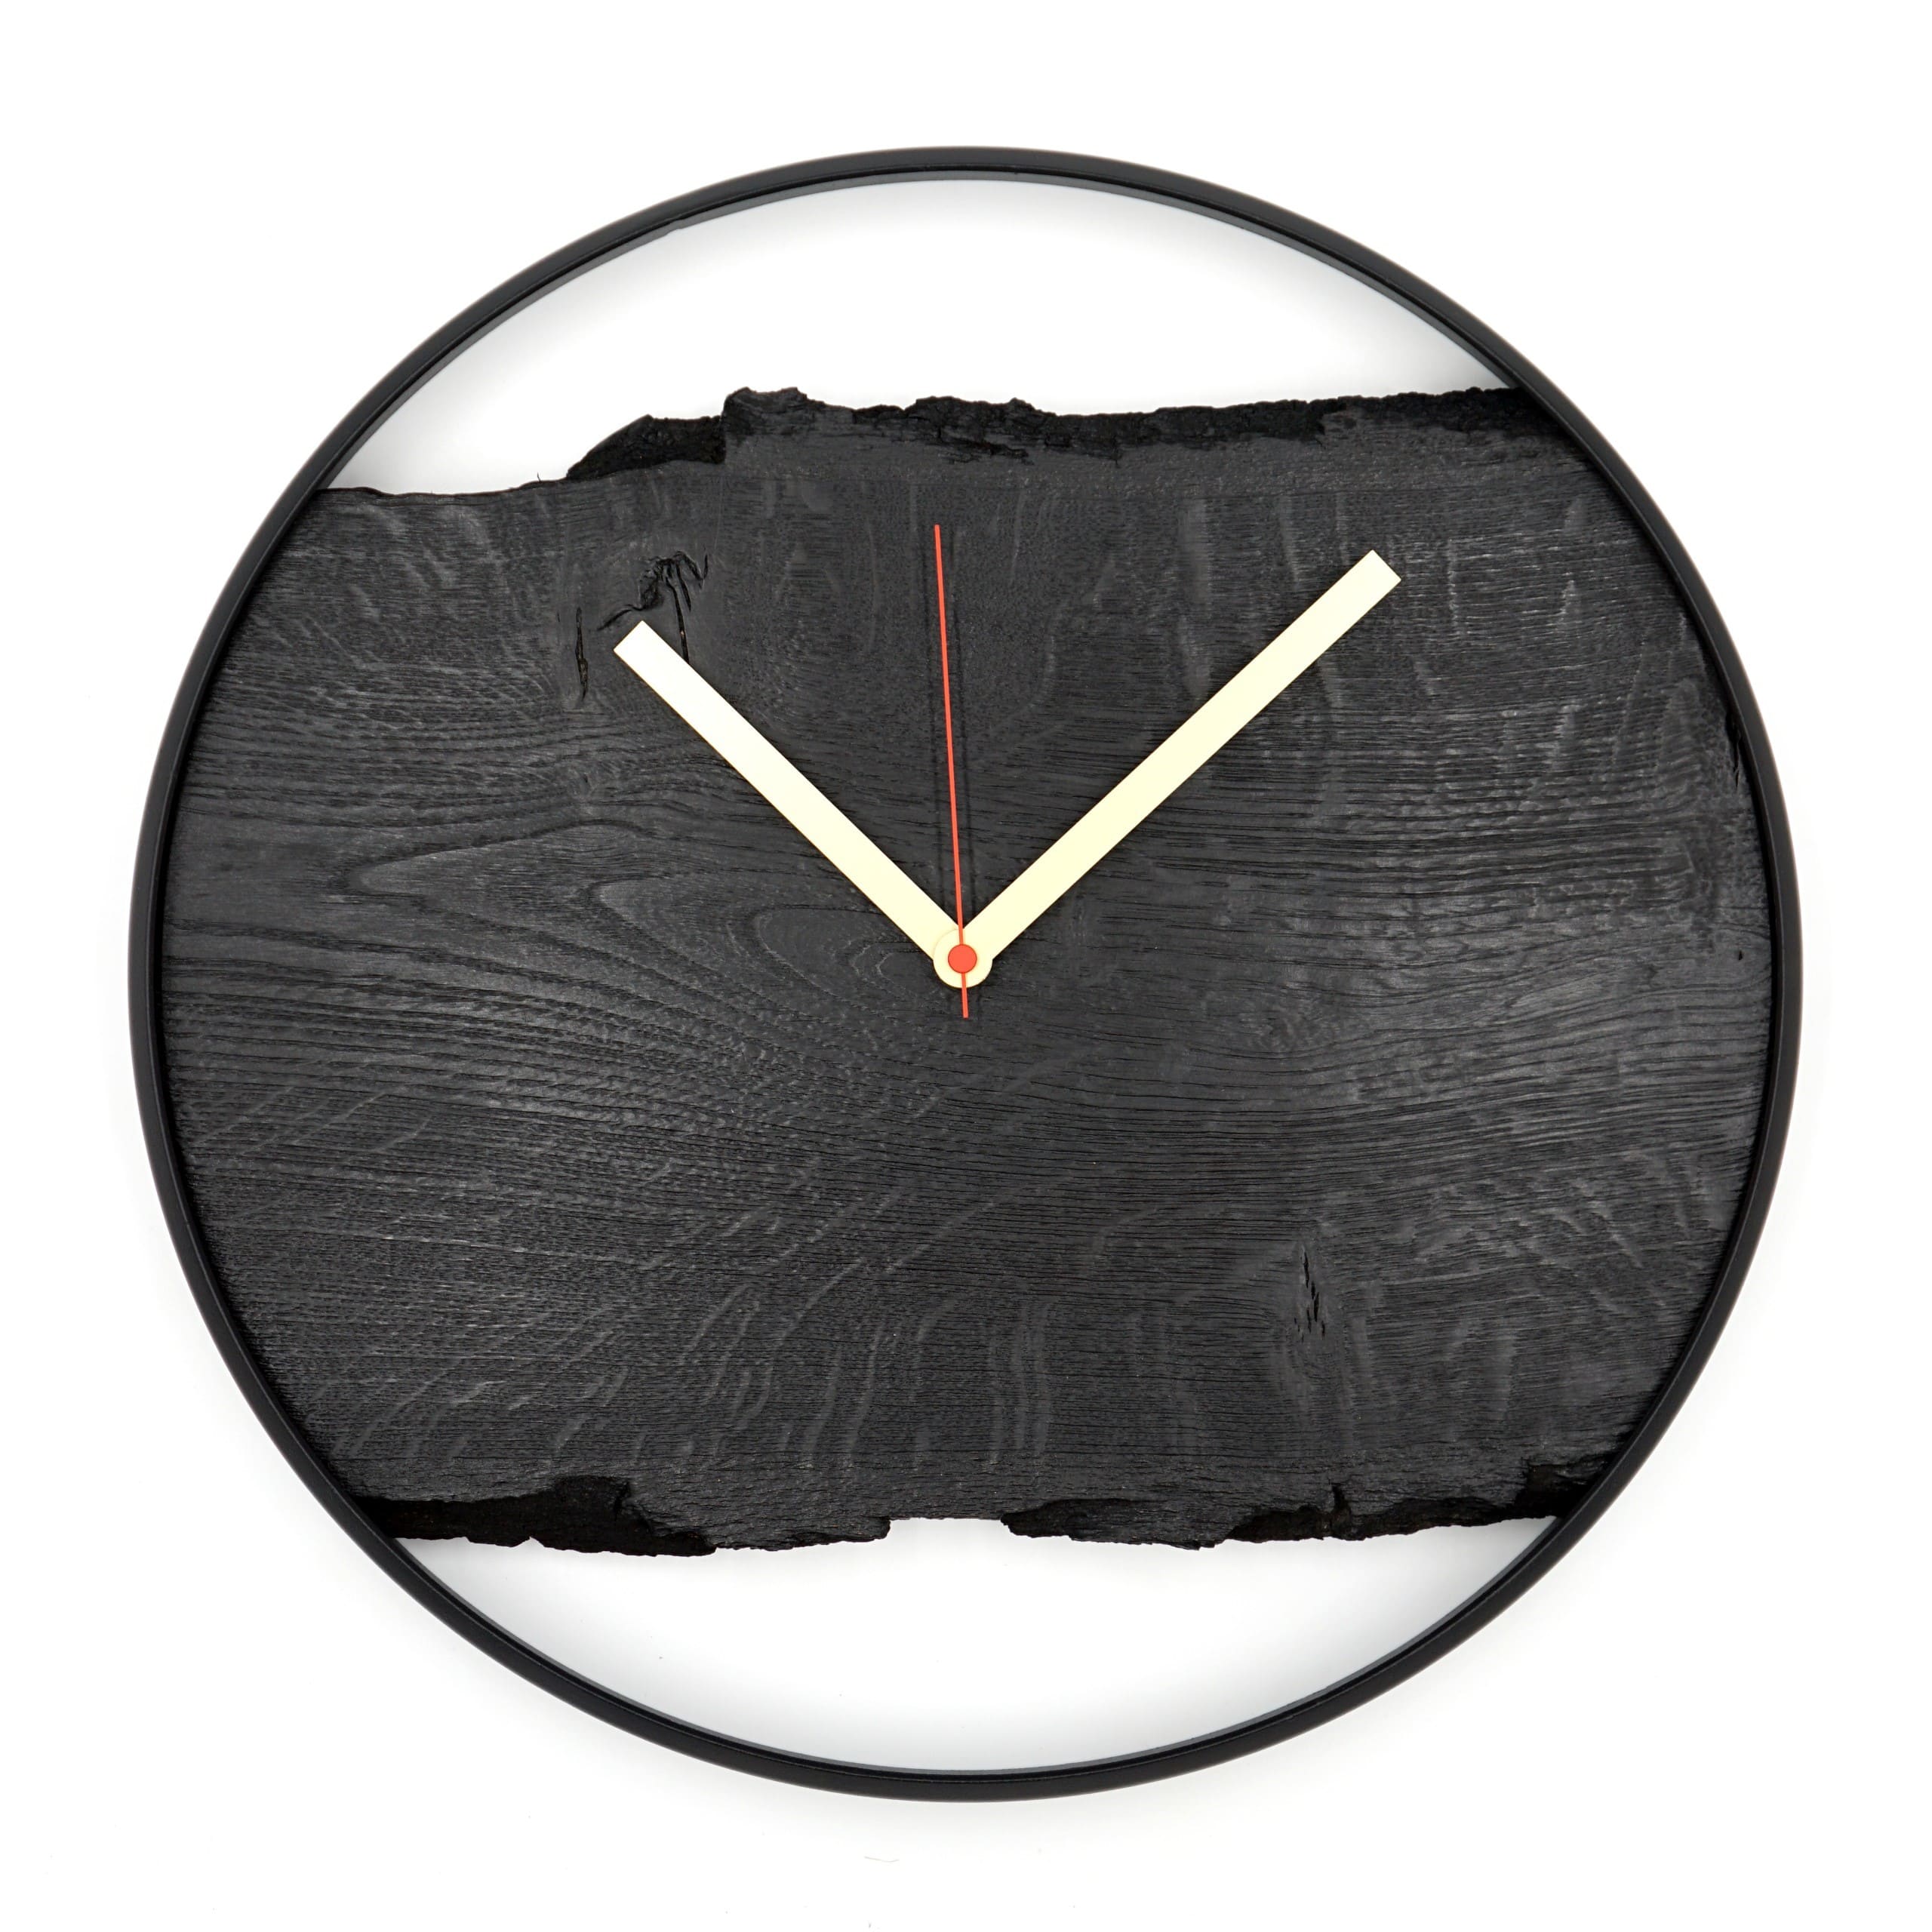 Wanduhr aus Eiche 'Nero' schwarz mit Metallring, lautlosem Uhrwerk modern Black-Edition mit rotem Sekundenzeiger Draufsicht